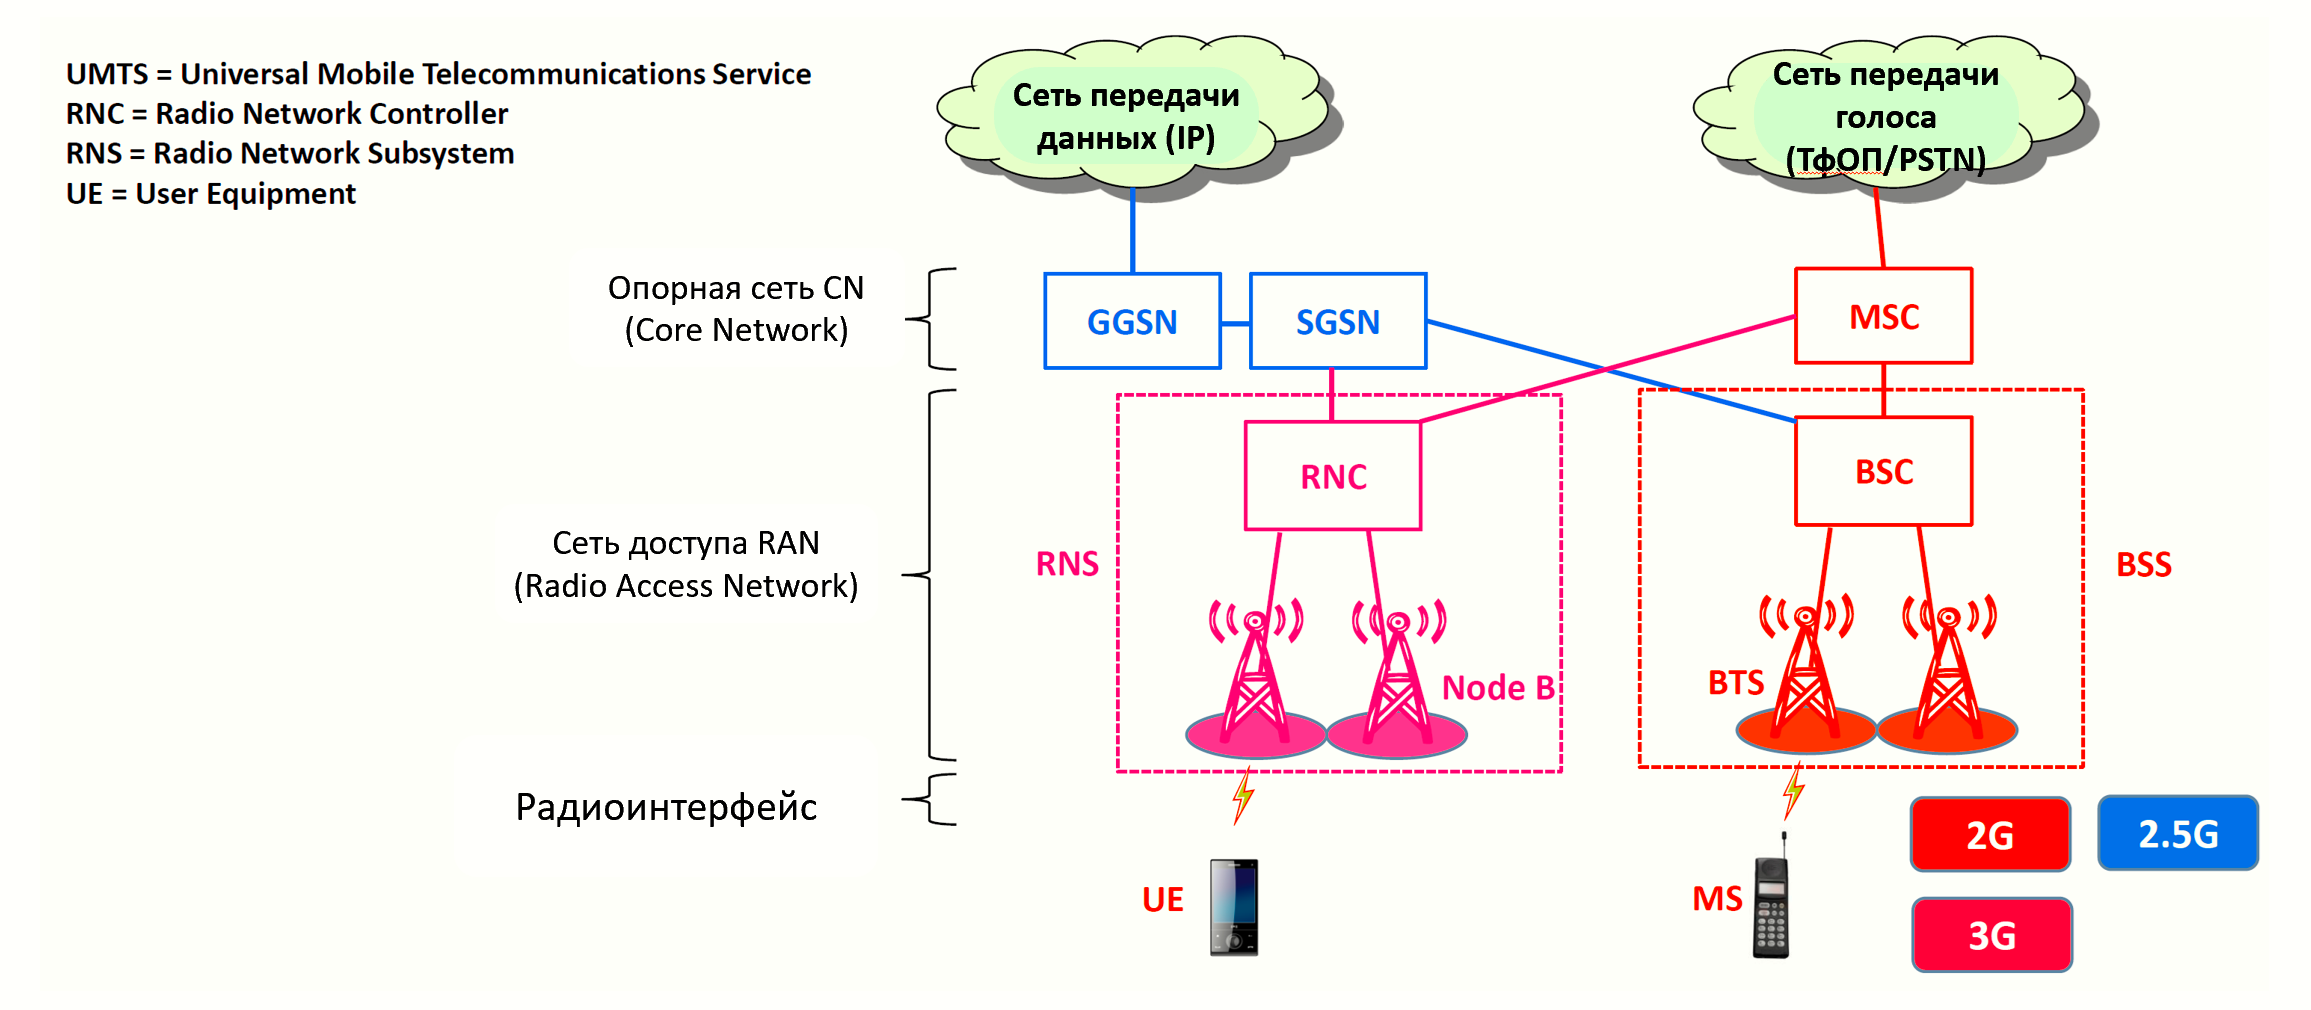 3 ж связь. Структура сети сотовой связи 3g 4g. Технологии сотовой связи 2g 3g 4g. Поколения сетей сотовой связи 1g 2g 3g 4g 5g. Схема сотовой связи 2g, 3g.